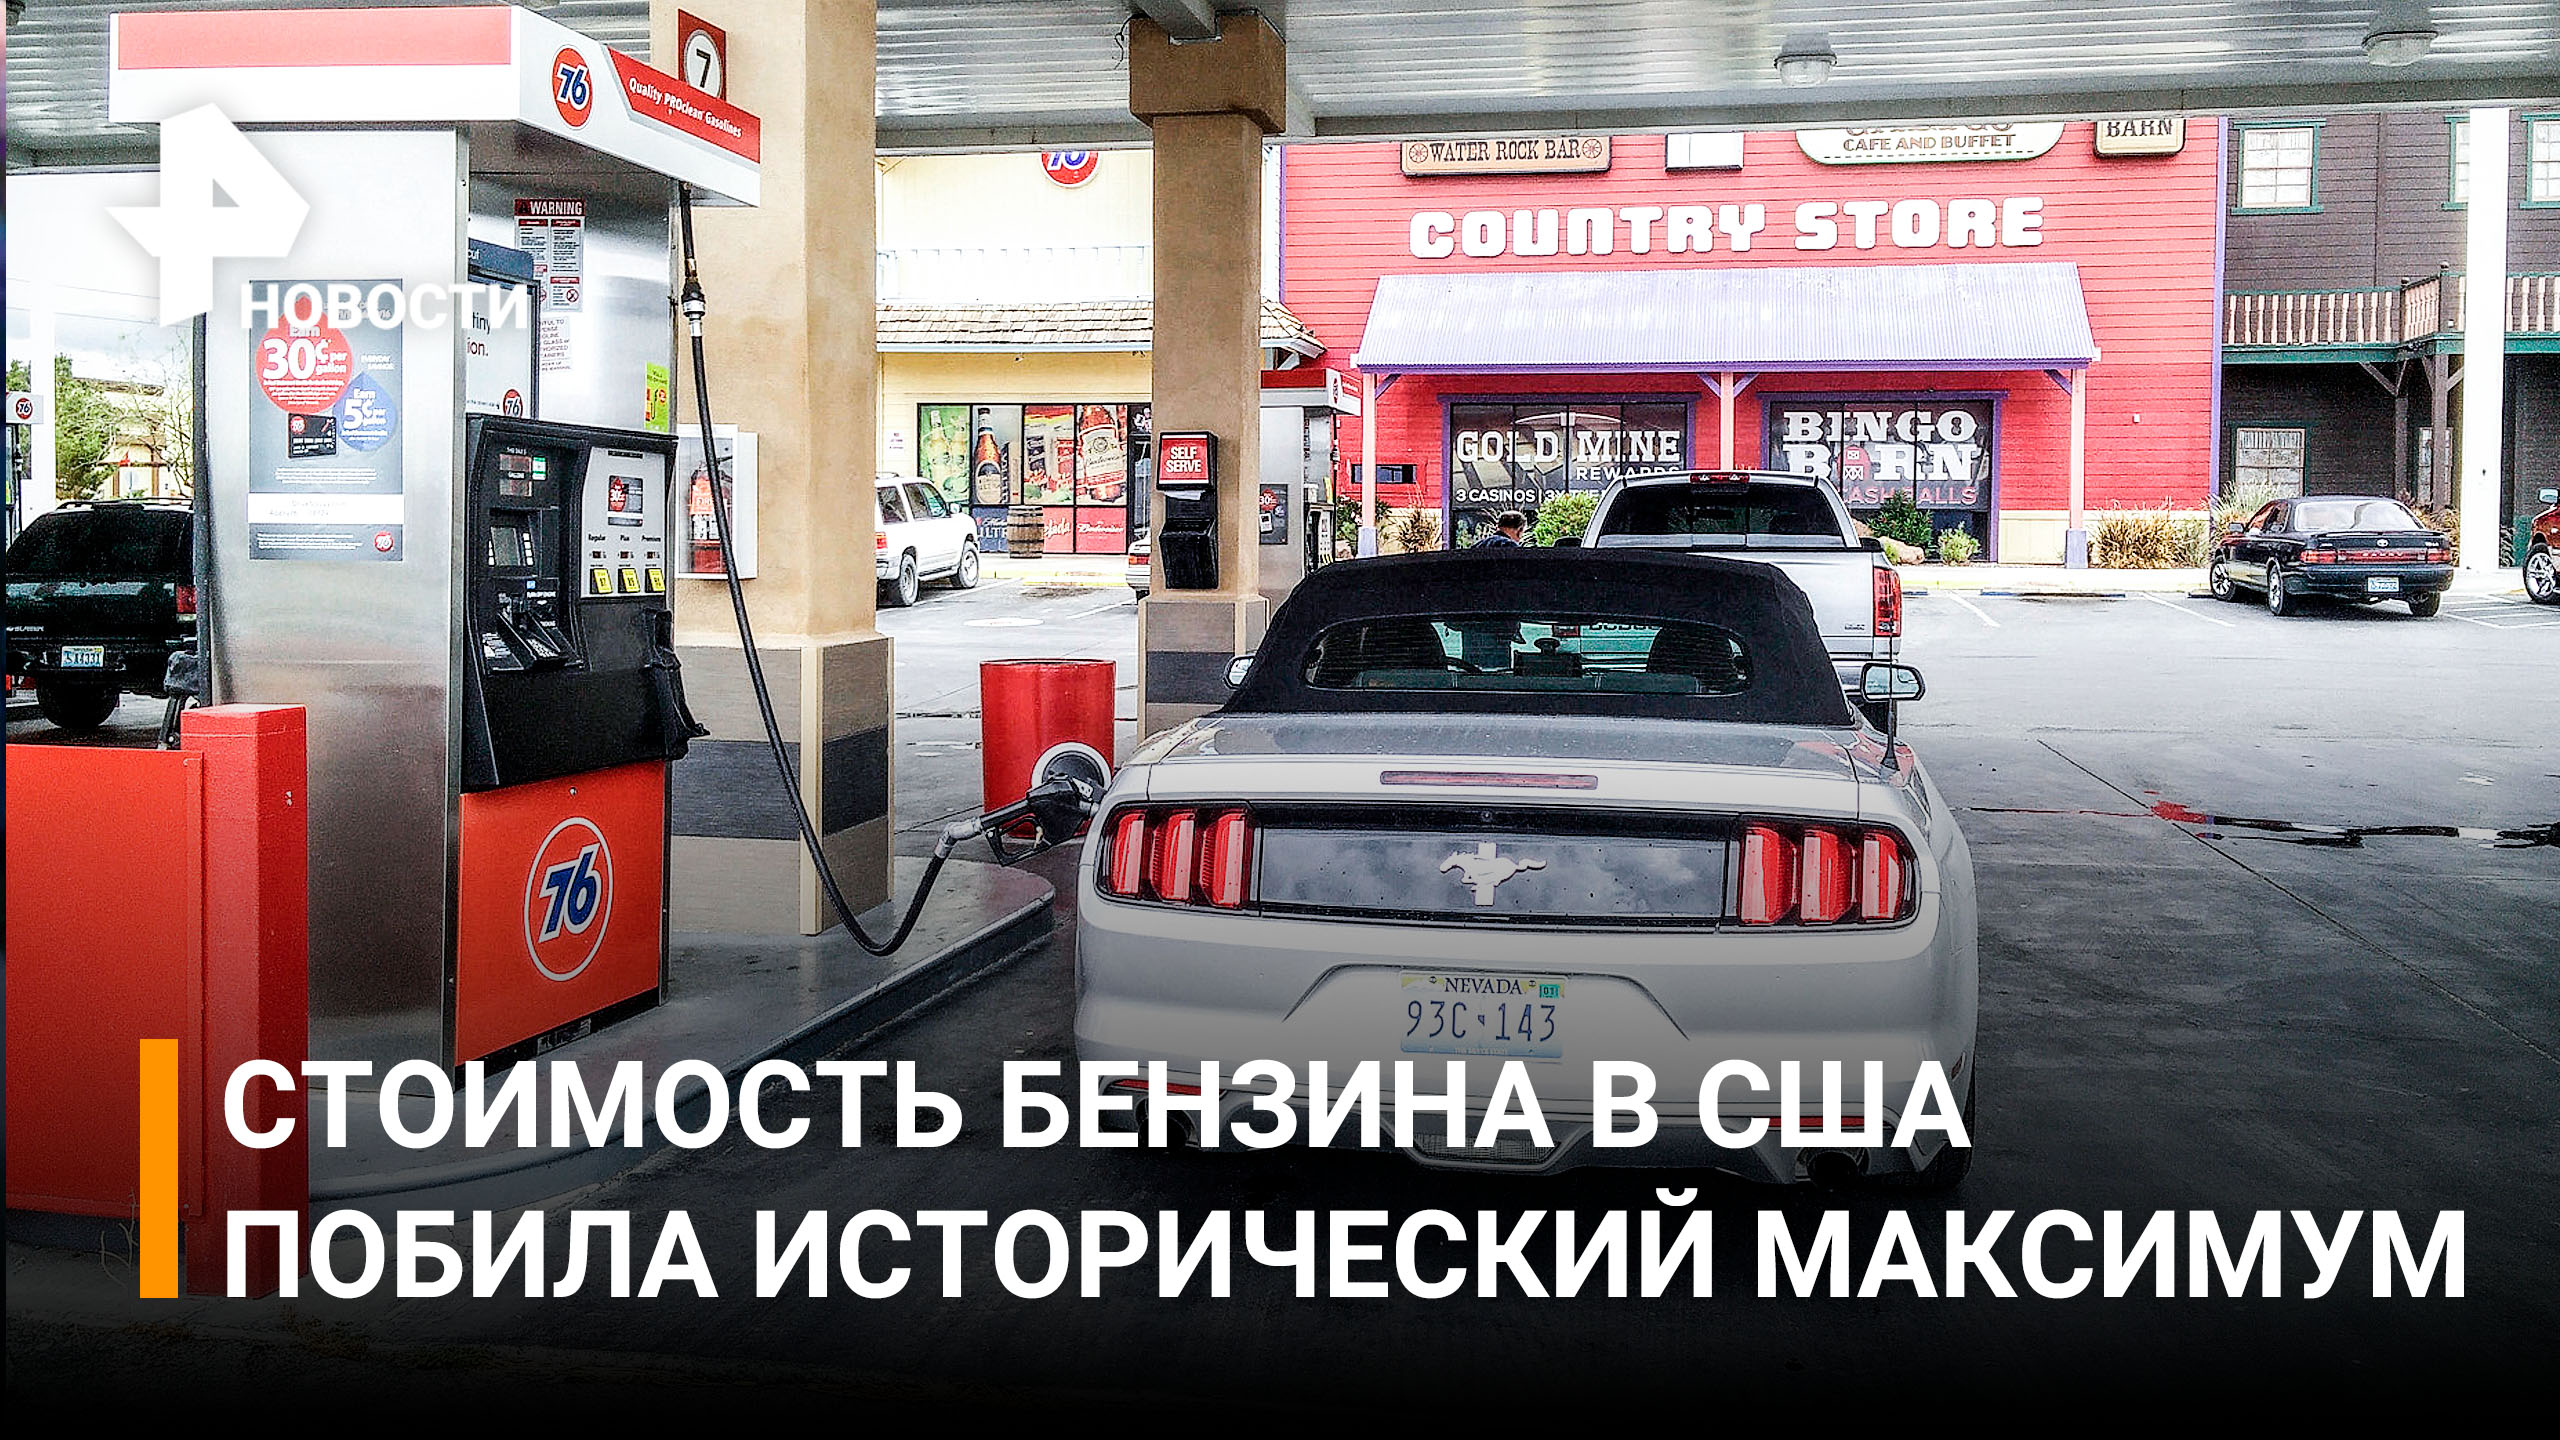 Цены на бензин в США обновили рекорд - 75 рублей за литр. Американцам предлагают дизель / РЕН